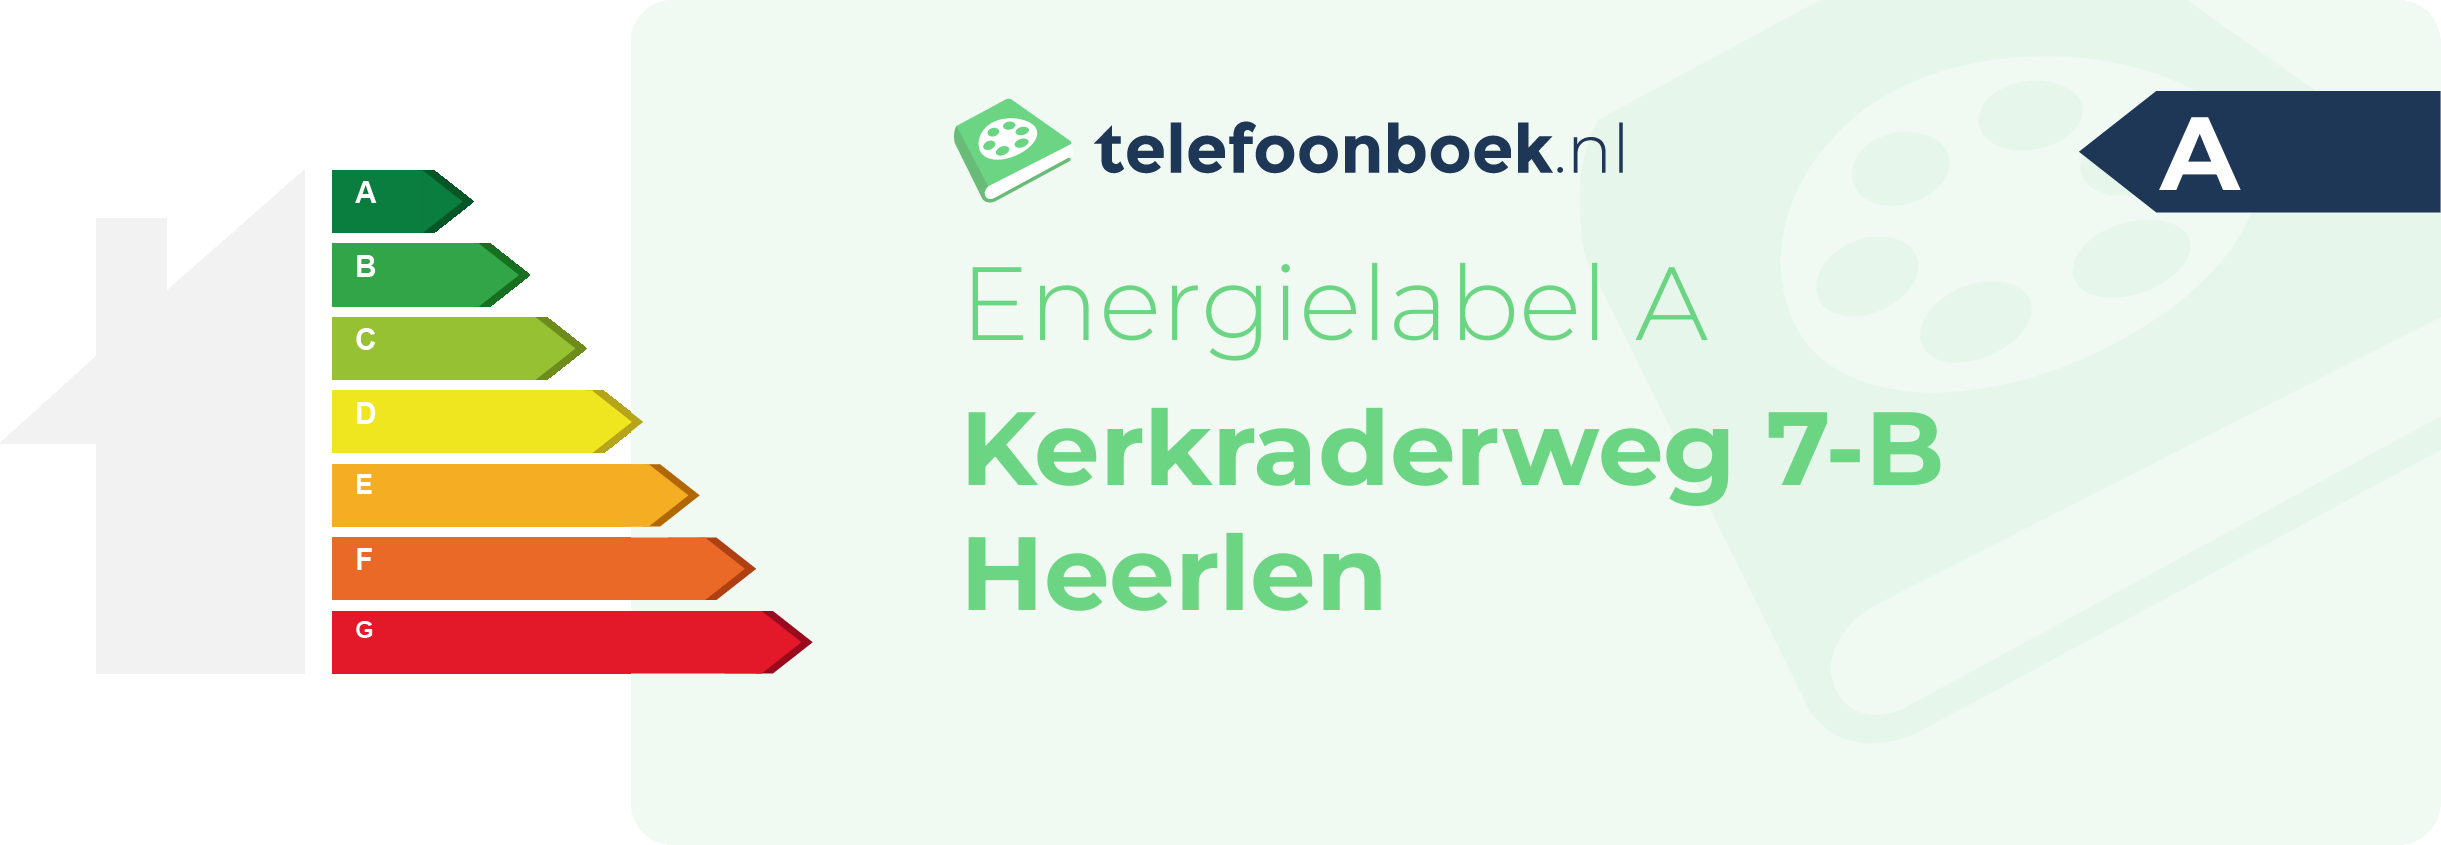 Energielabel Kerkraderweg 7-B Heerlen